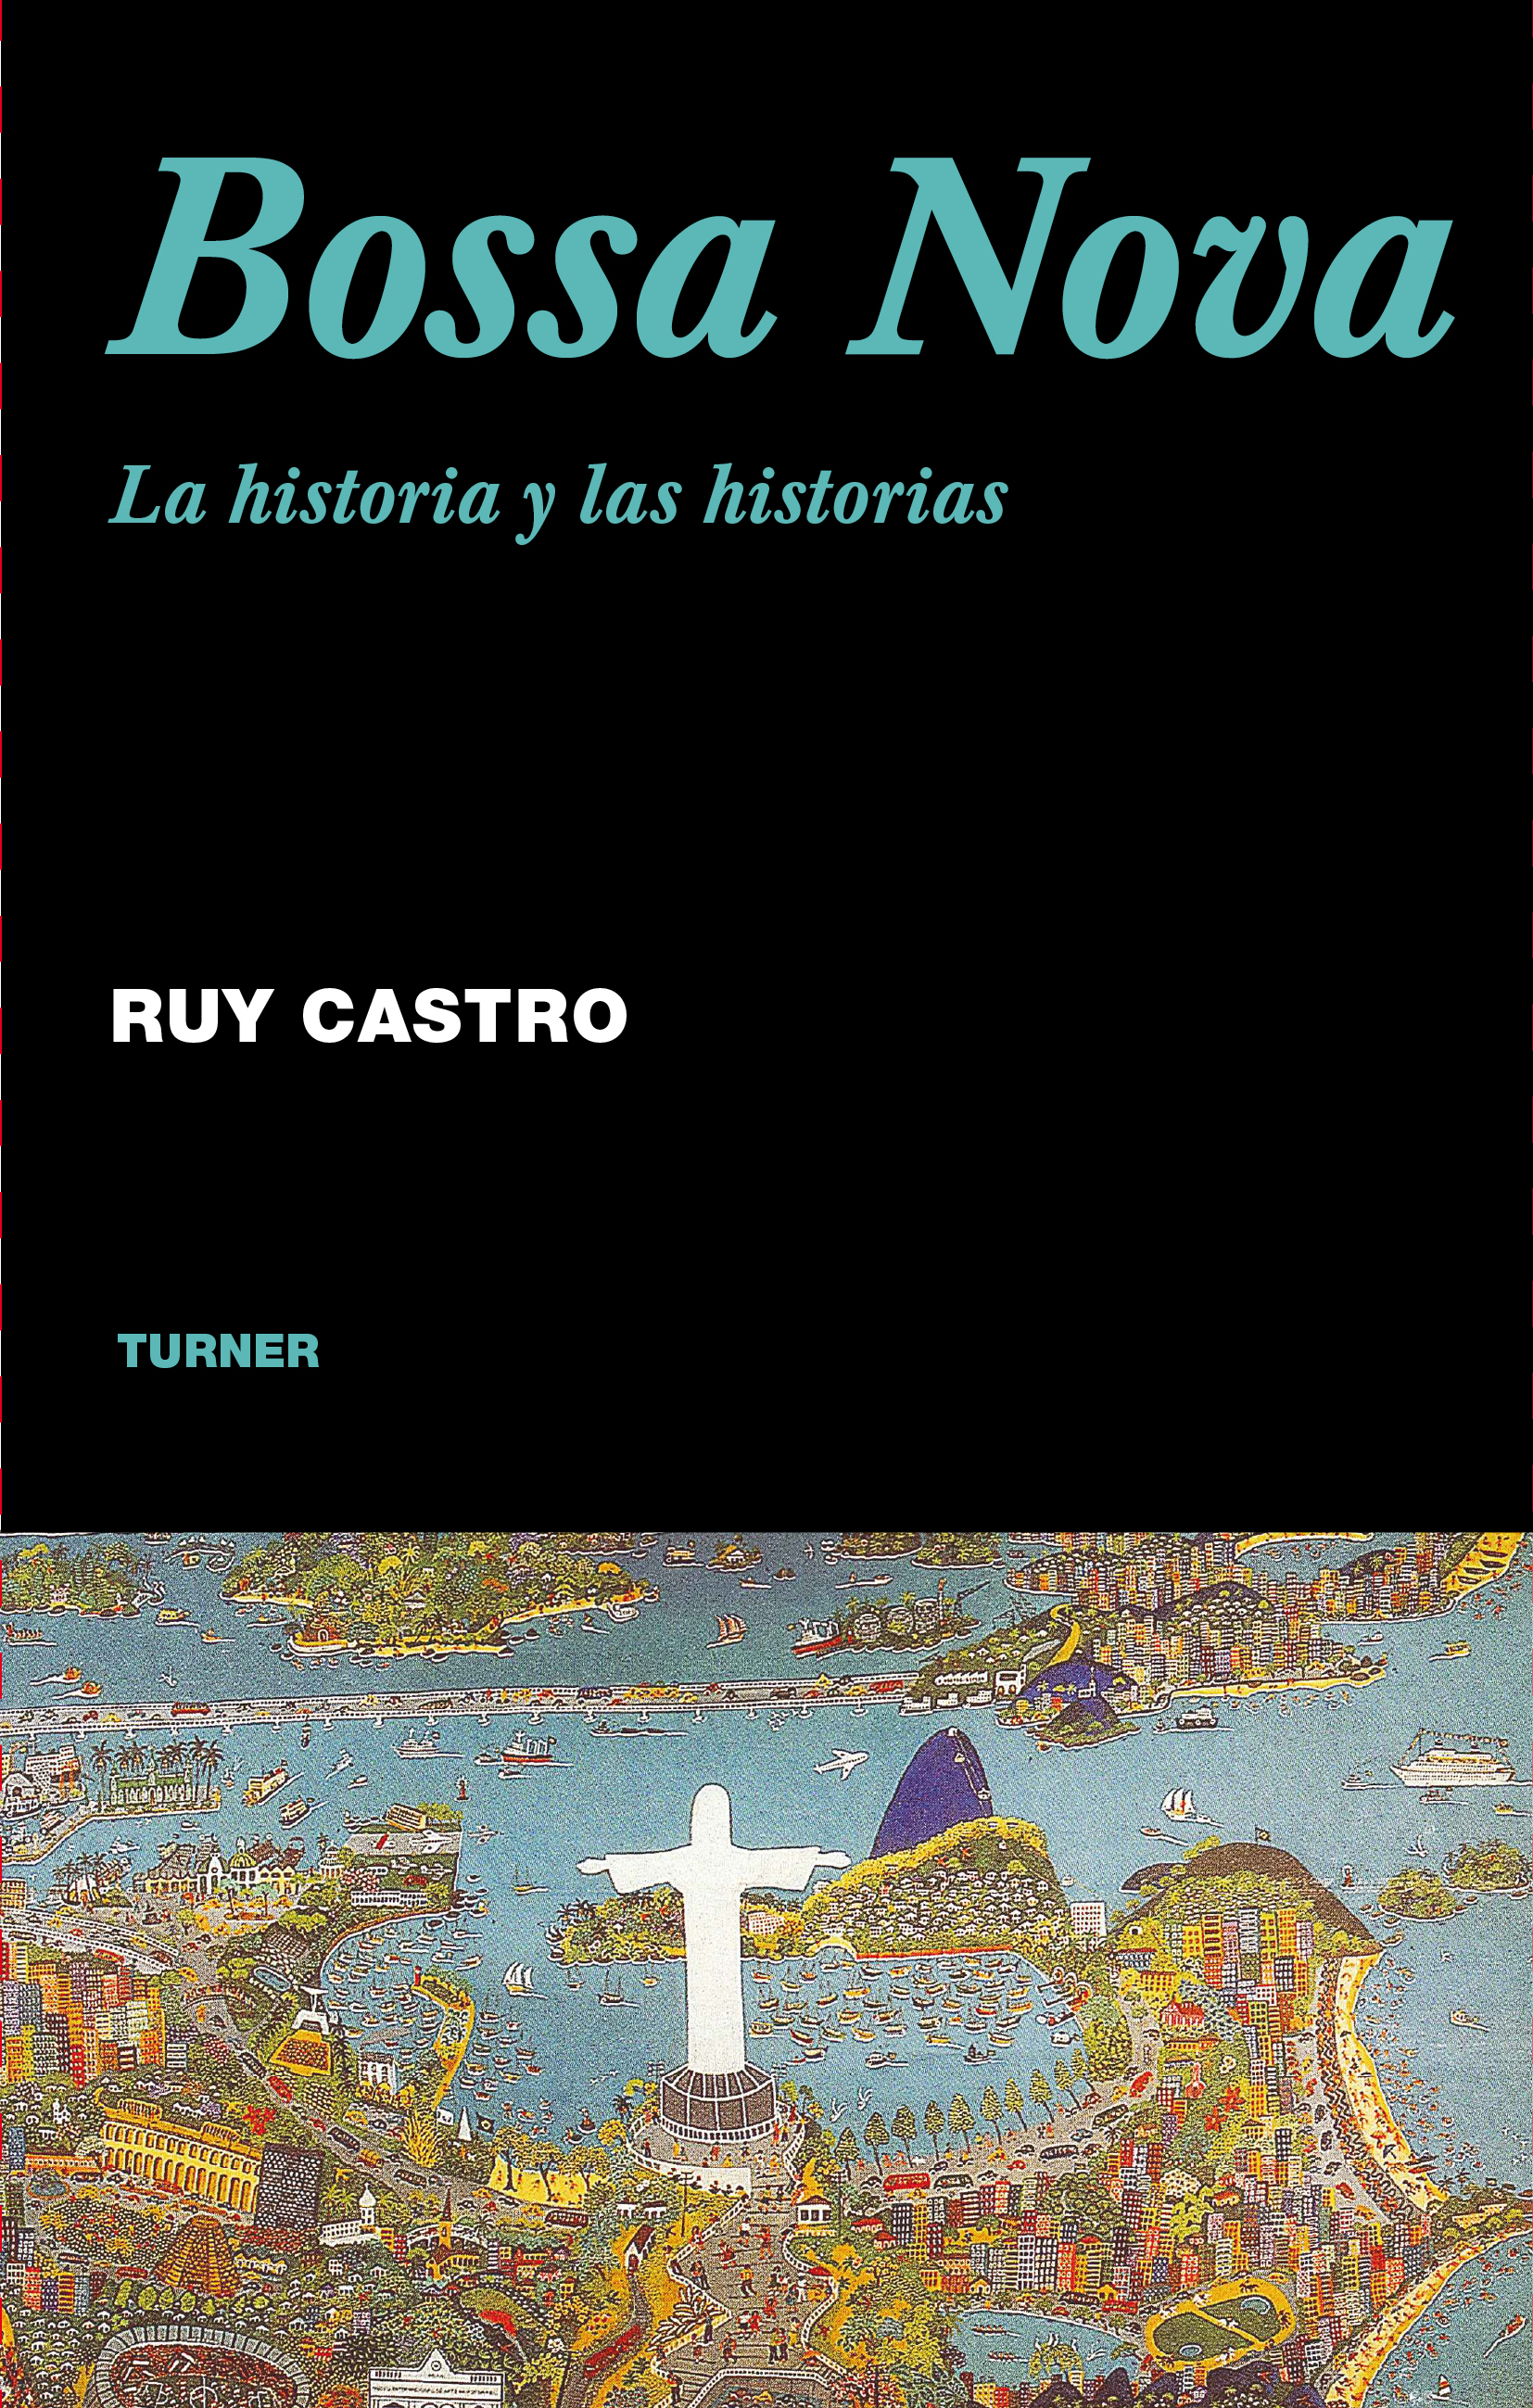 "Bossa Nova. La historia y las historias", Ruy Castro (Ed. Turner, 2008)